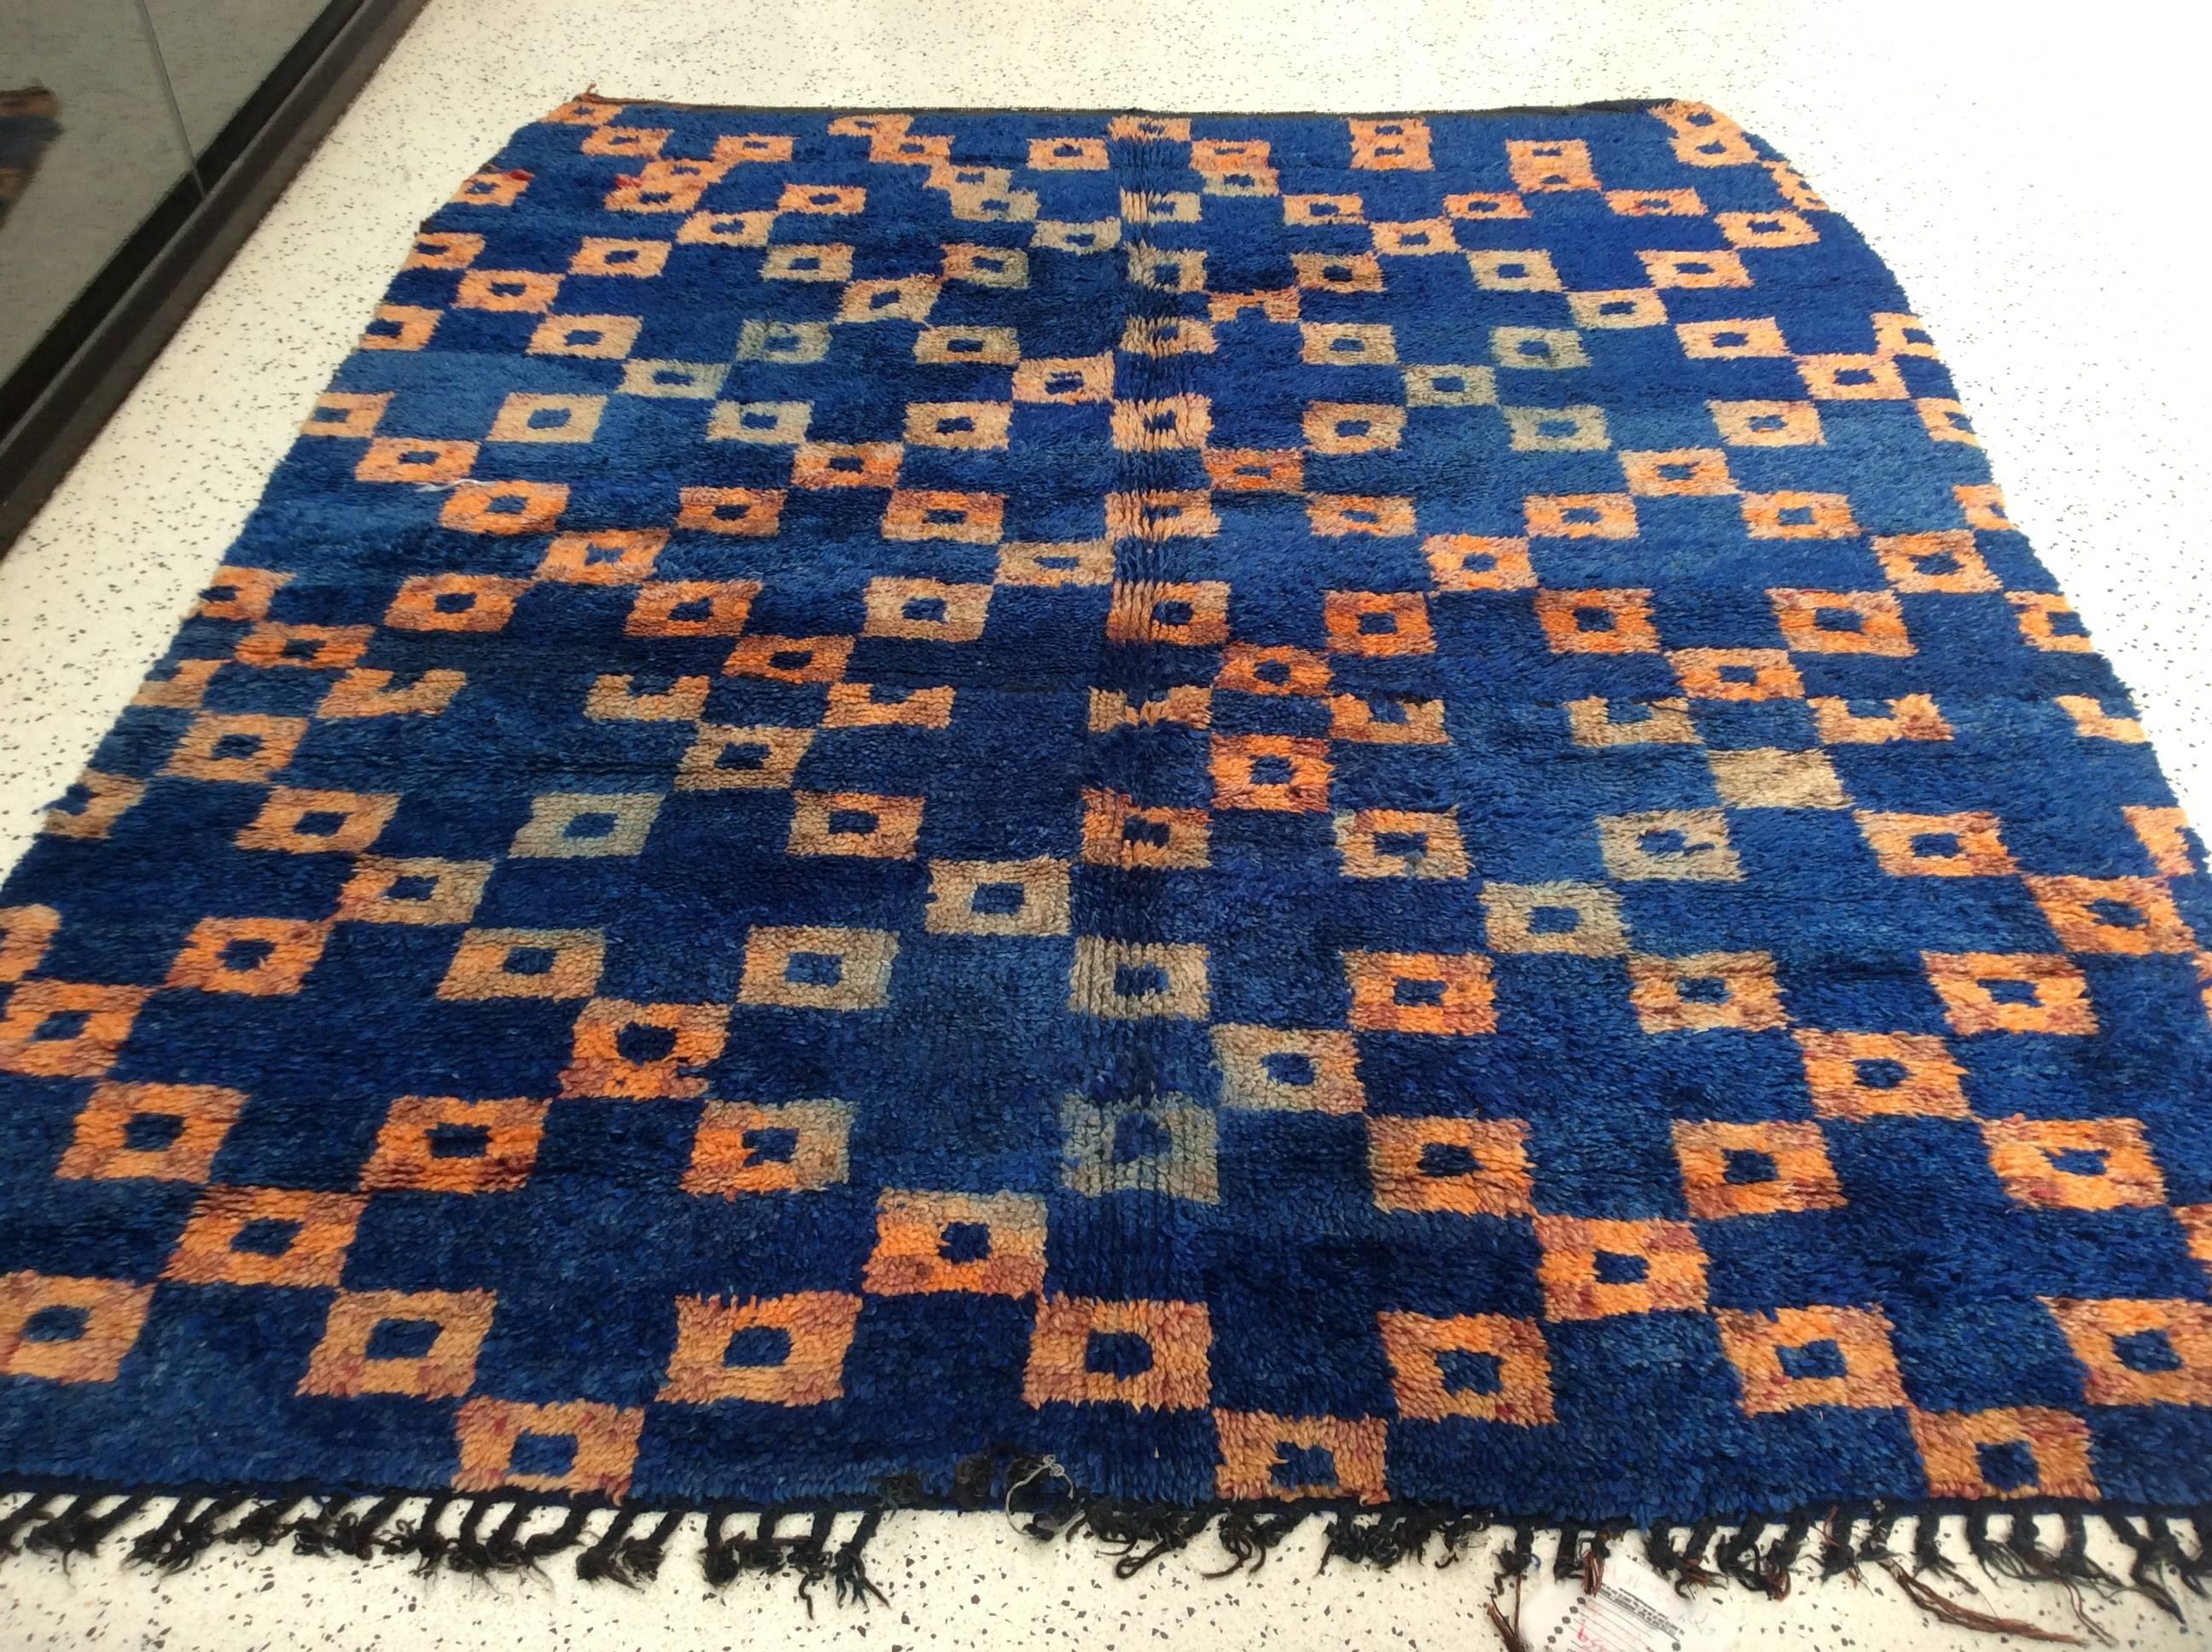 Blauer marokkanischer Teppich mit orangefarbenen Kästchen

Eine Webtechnik, die von Generation zu Generation weitergegeben wurde, macht den marokkanischen Berberteppich zu einer schönen Ergänzung Ihrer Sammlung. Es wird aus luxuriöser,